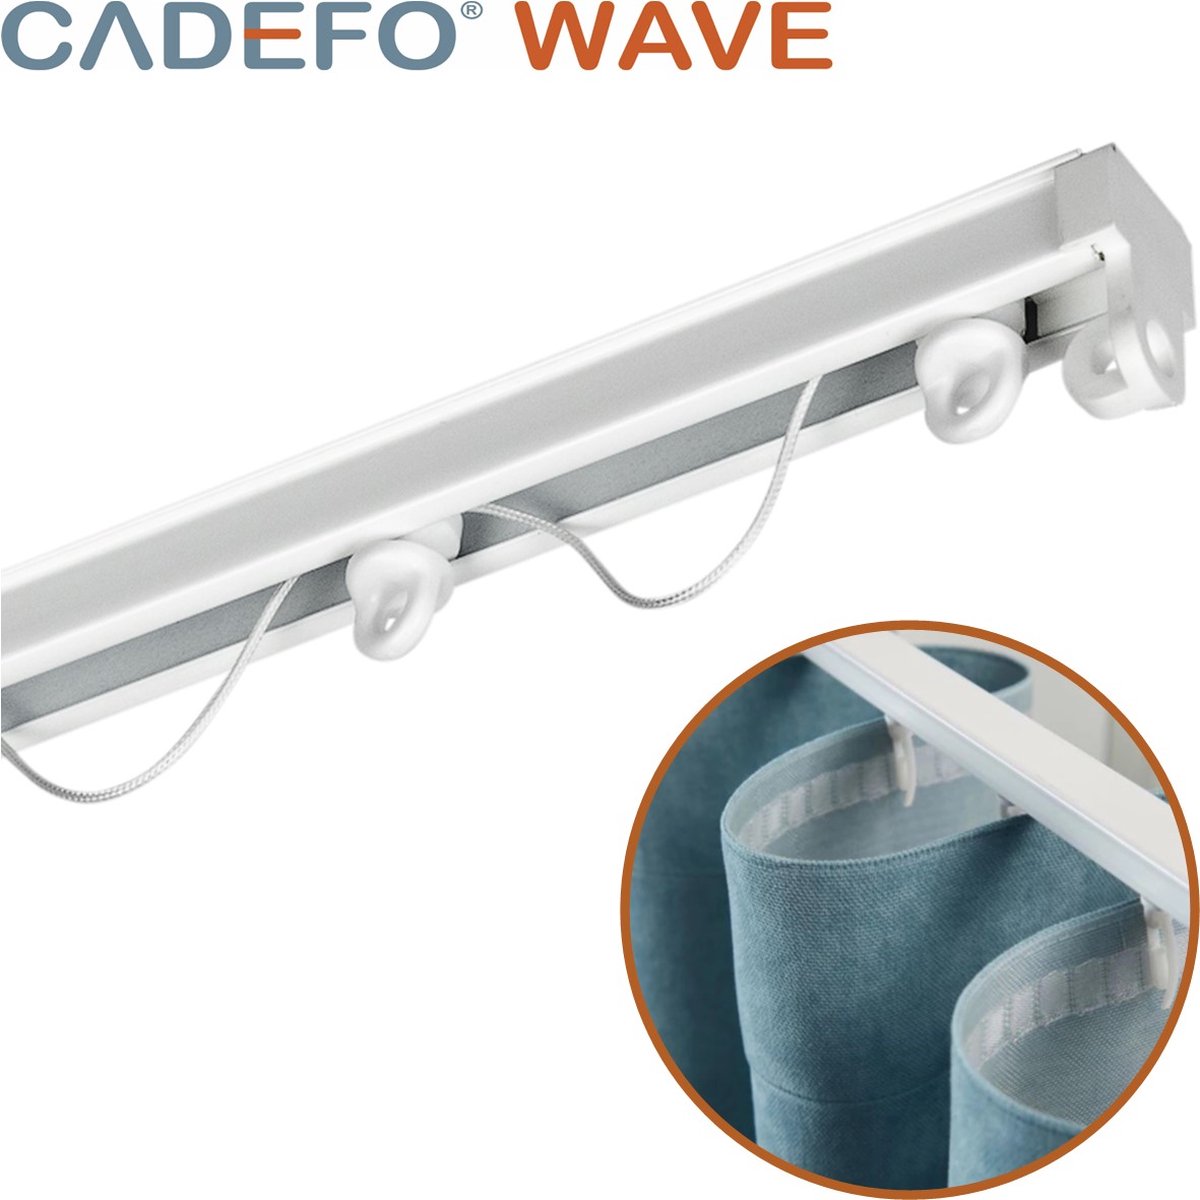 CADEFO WAVE (501 - 550 cm) Gordijnrails - Compleet op maat! - UIT 1 STUK - Leverbaar tot 6 meter - Plafondbevestiging - Lengte 513 cm